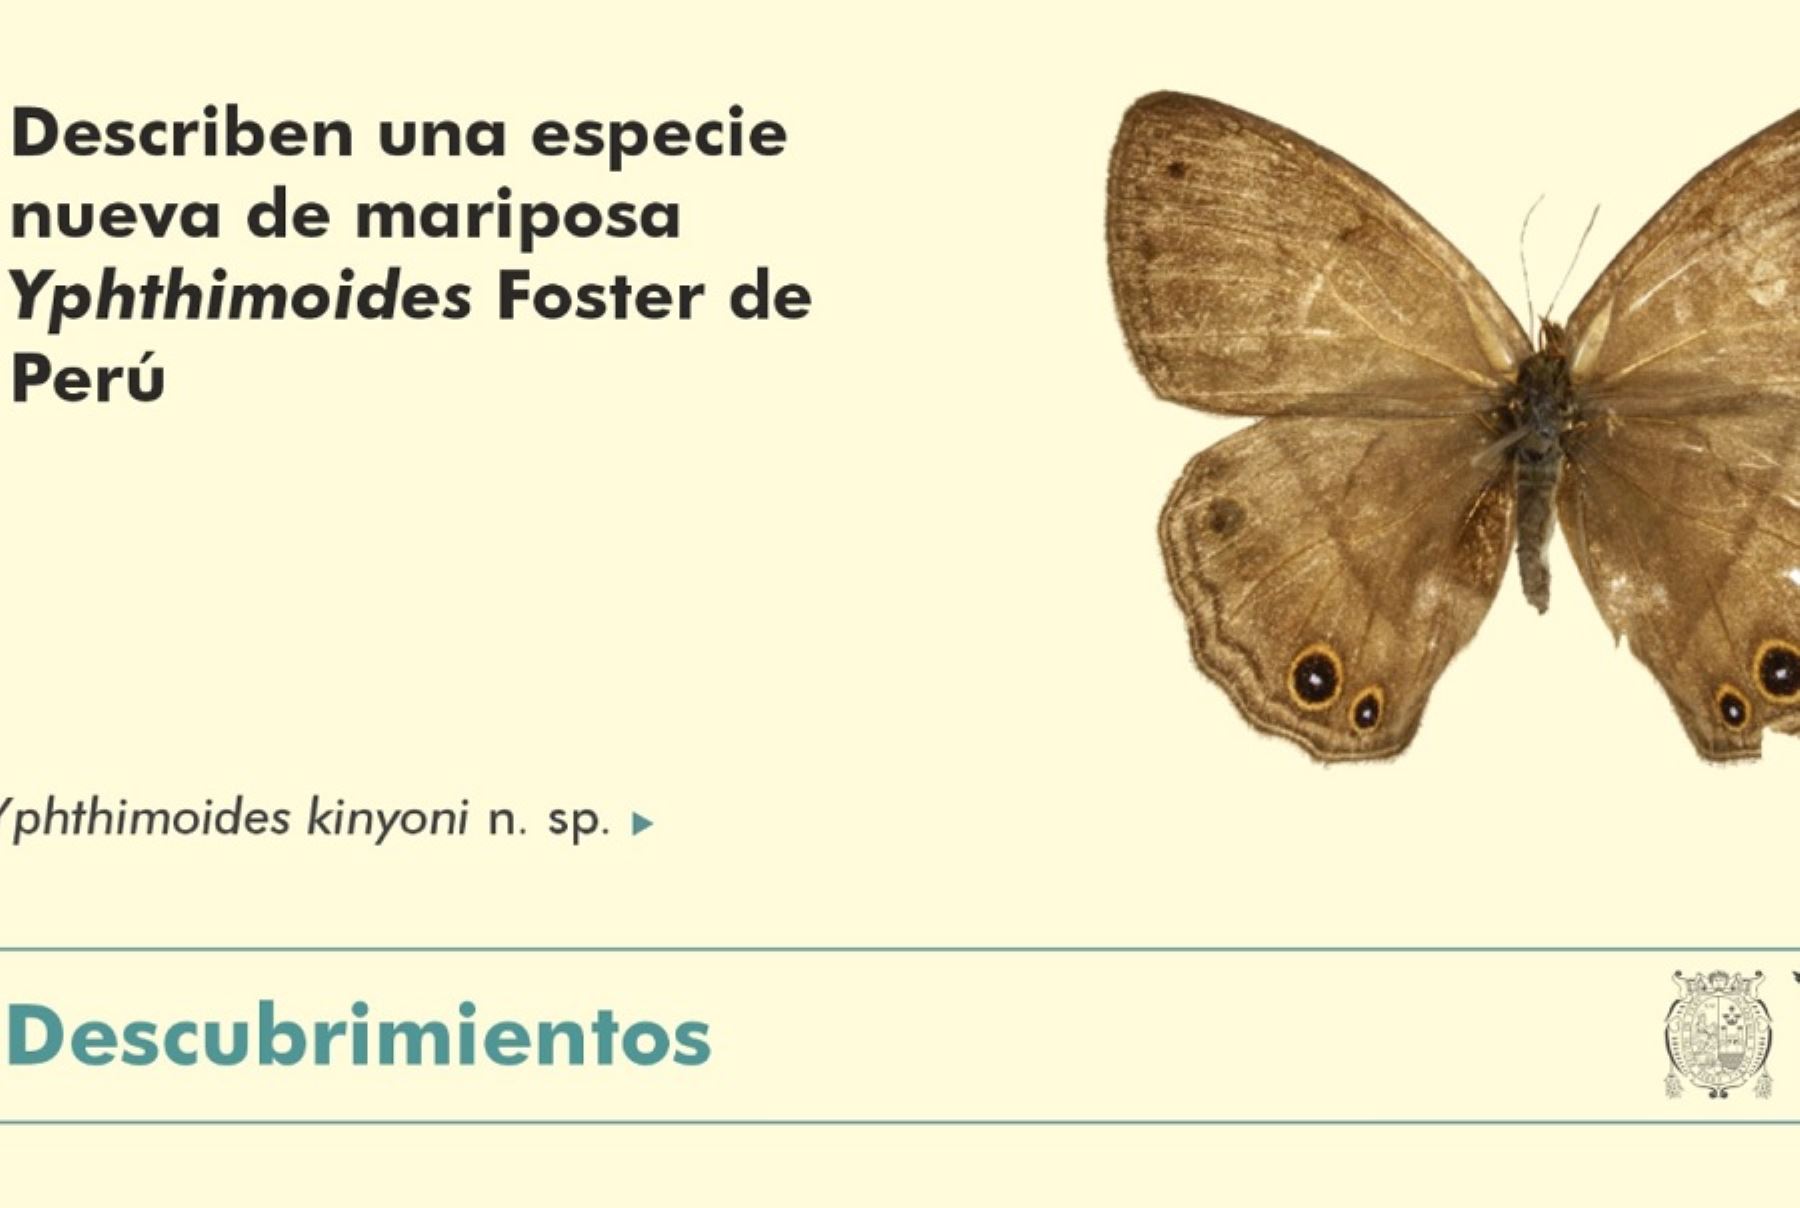 Un equipo de biólogos descubrió una nueva especie de mariposa Yphthimoides Foster en el valle de Cosñipata, provincia de Paucartambo de la región Cusco